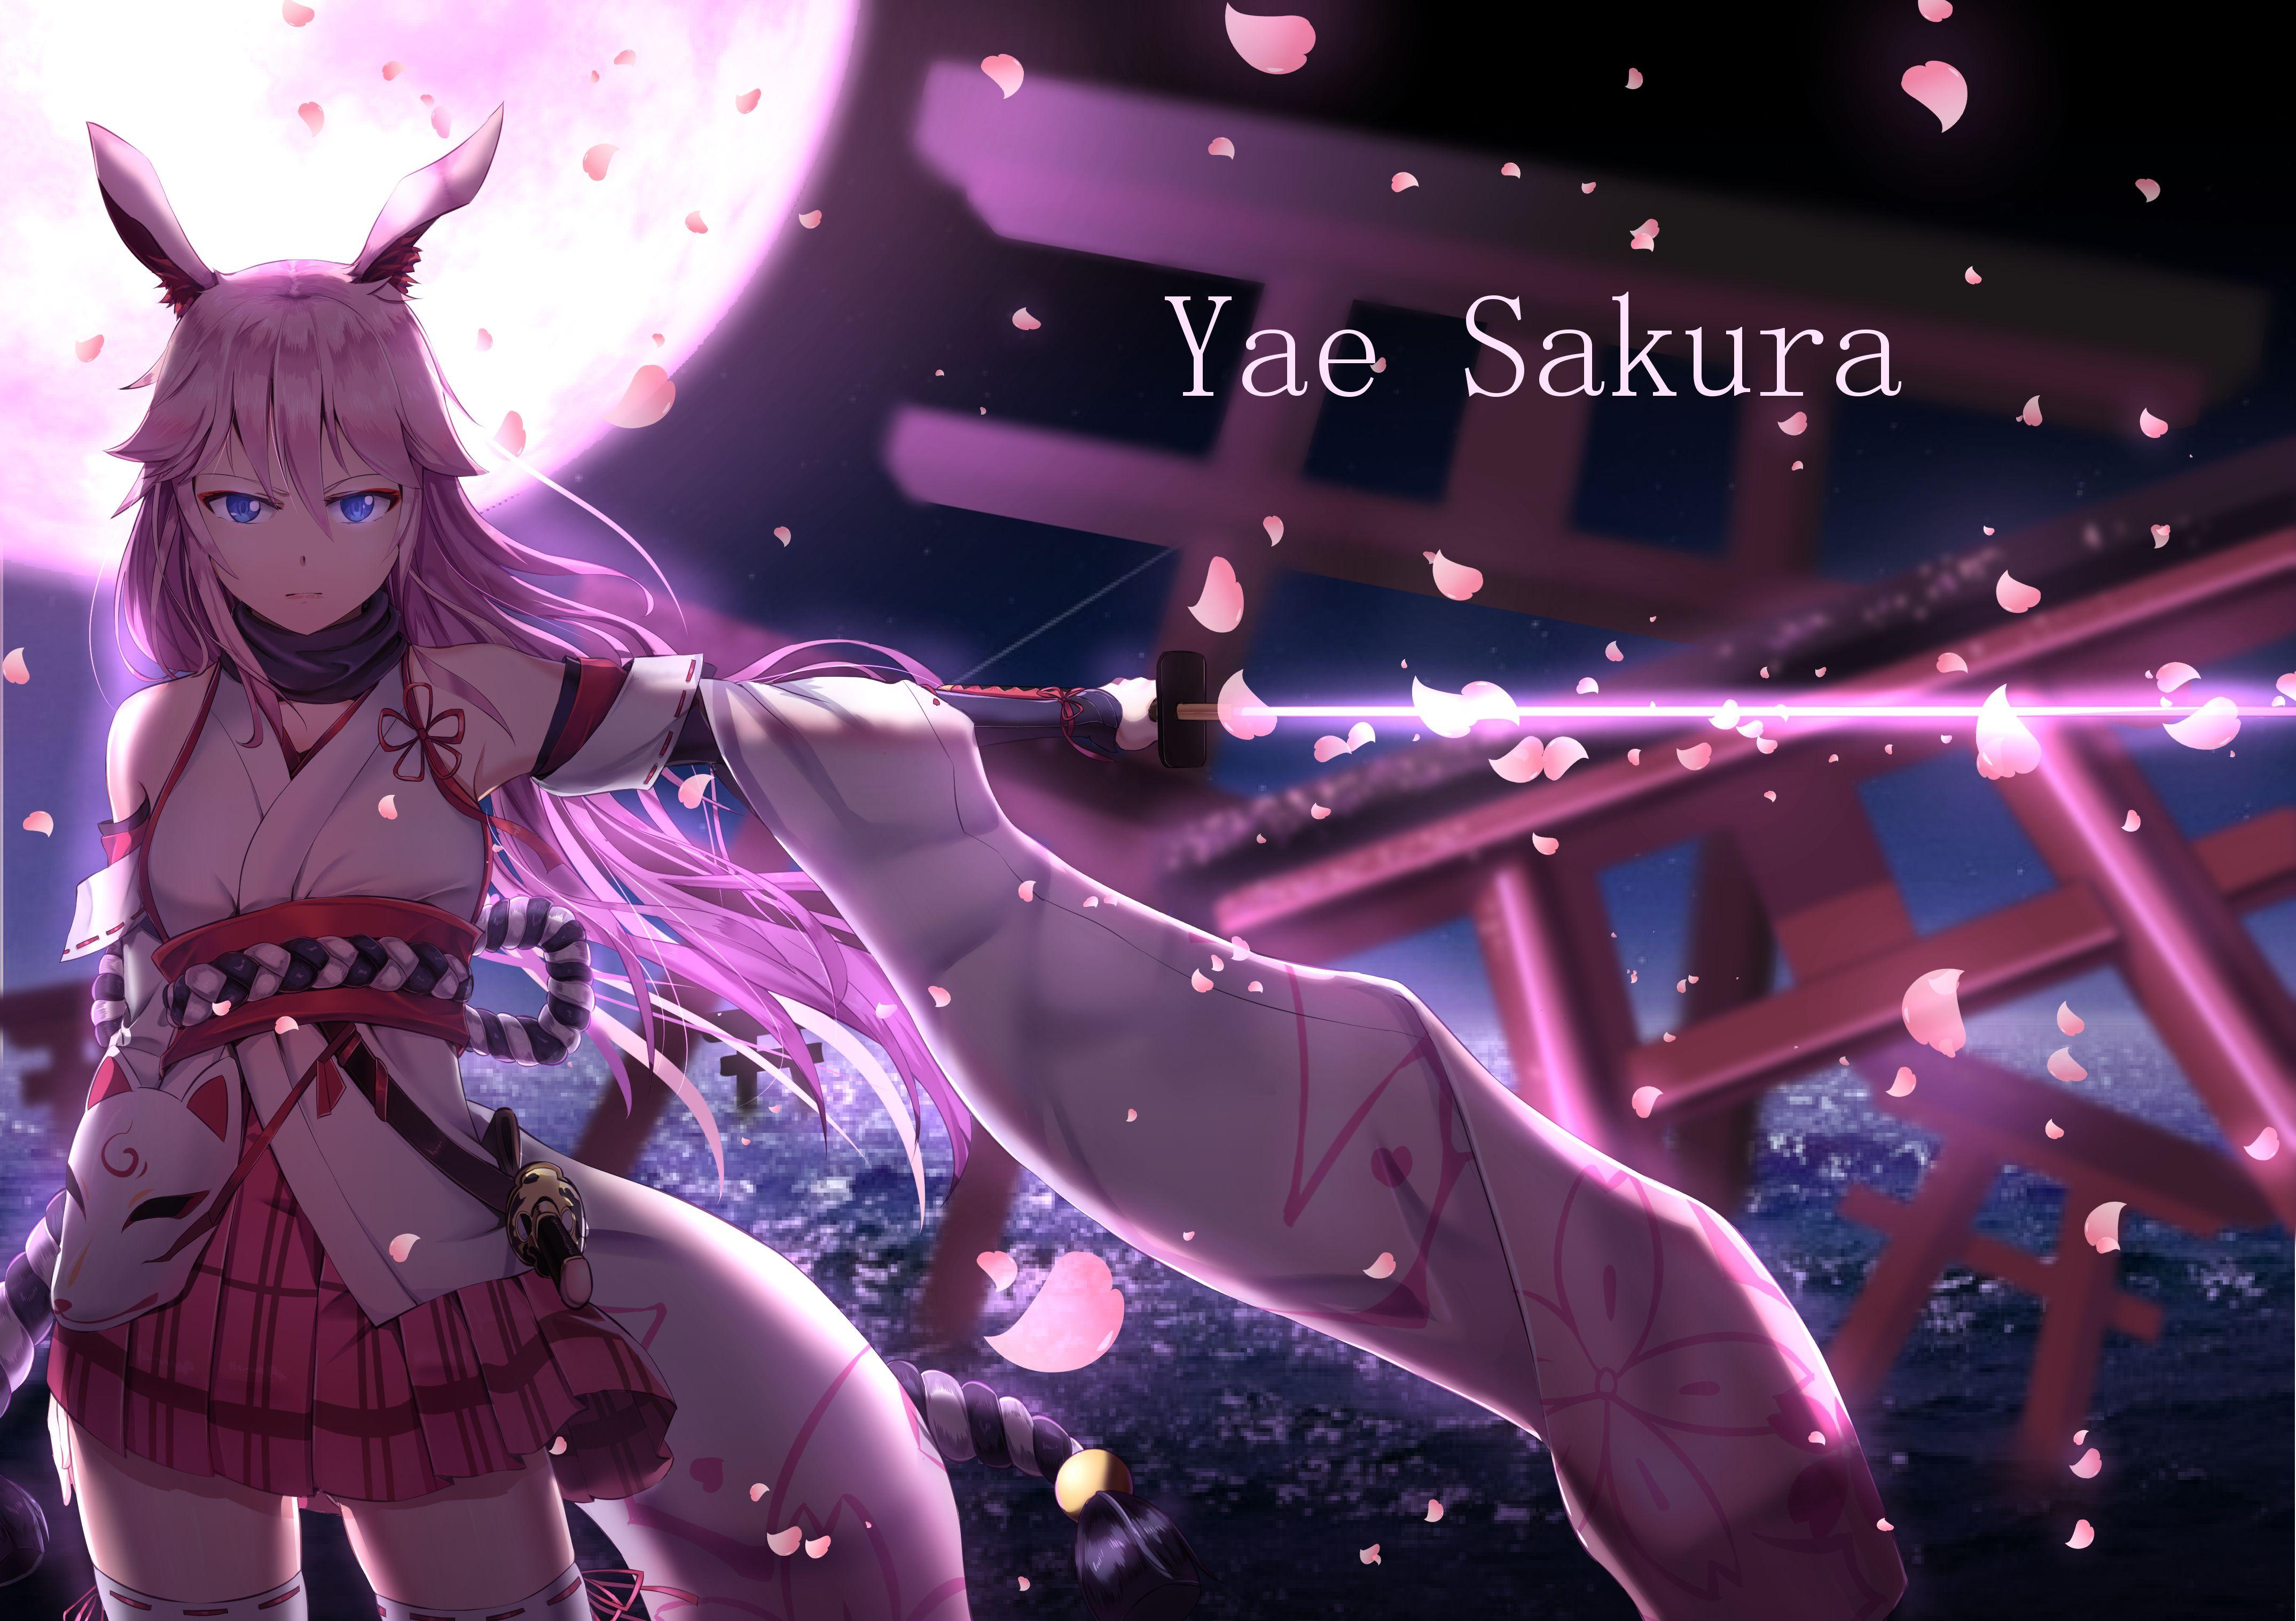 Yae Sakura Wallpapers - Top Free Yae Sakura Backgrounds - WallpaperAccess